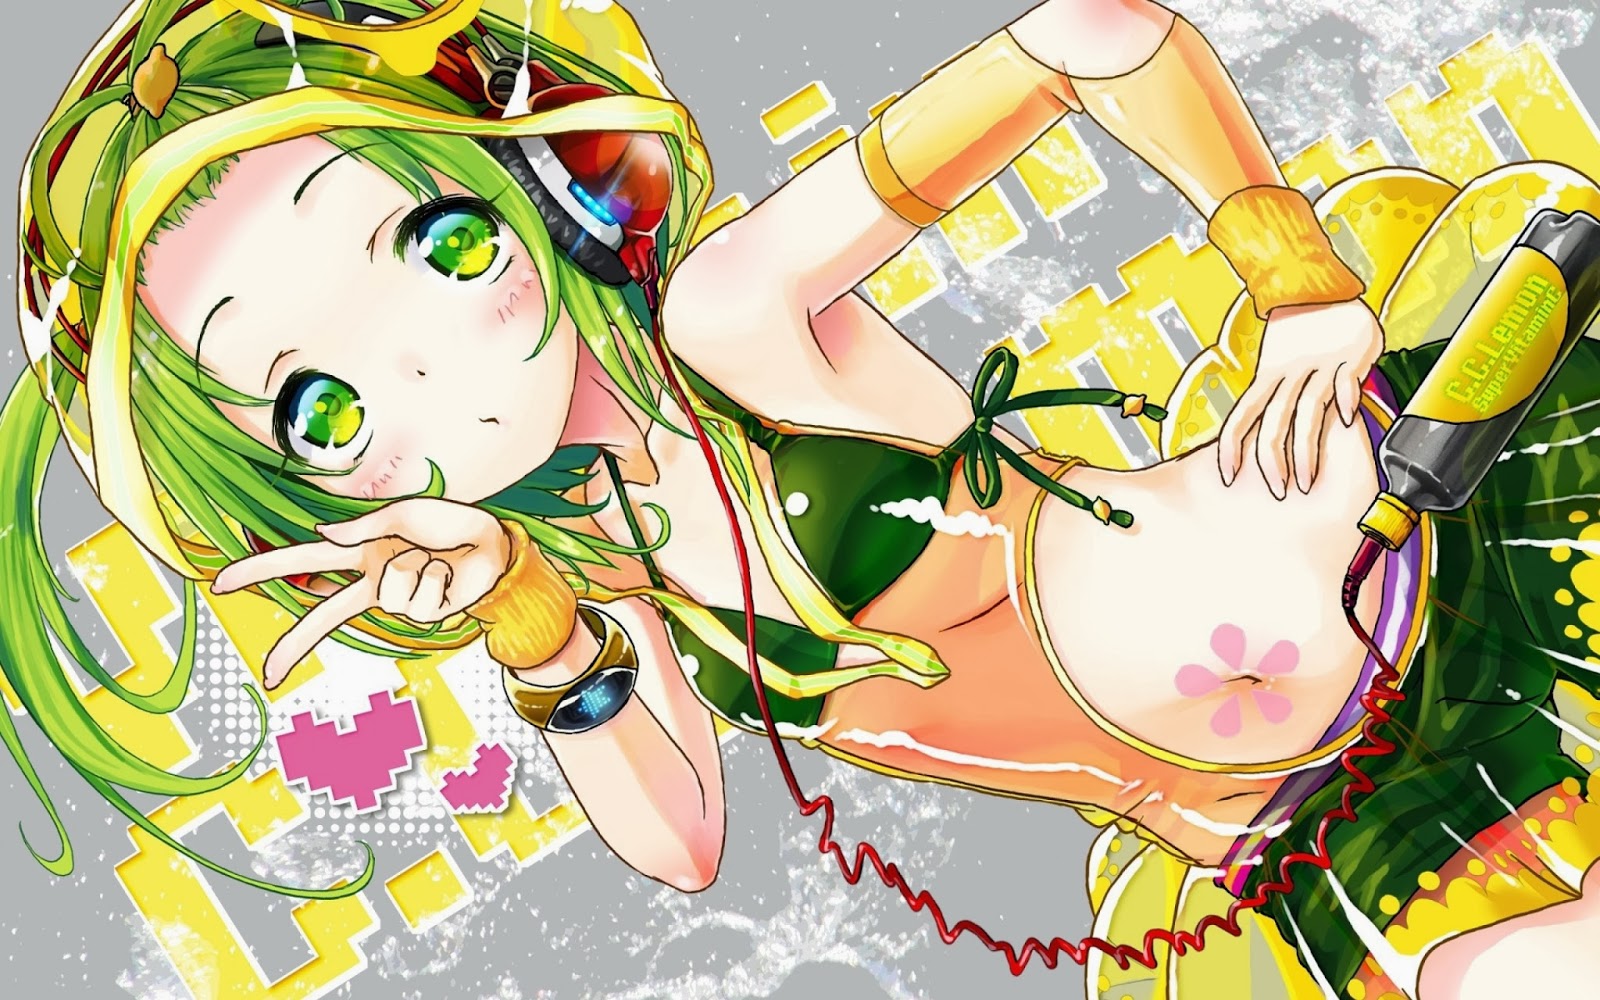 Mượn hình ảnh anime để quảng cáo nước giải khát C.C lemon Headphone_green_eyes_green_hair_anime_girls_bikini_top_cc_lemon_1920x1200_size_size_2560x1600_